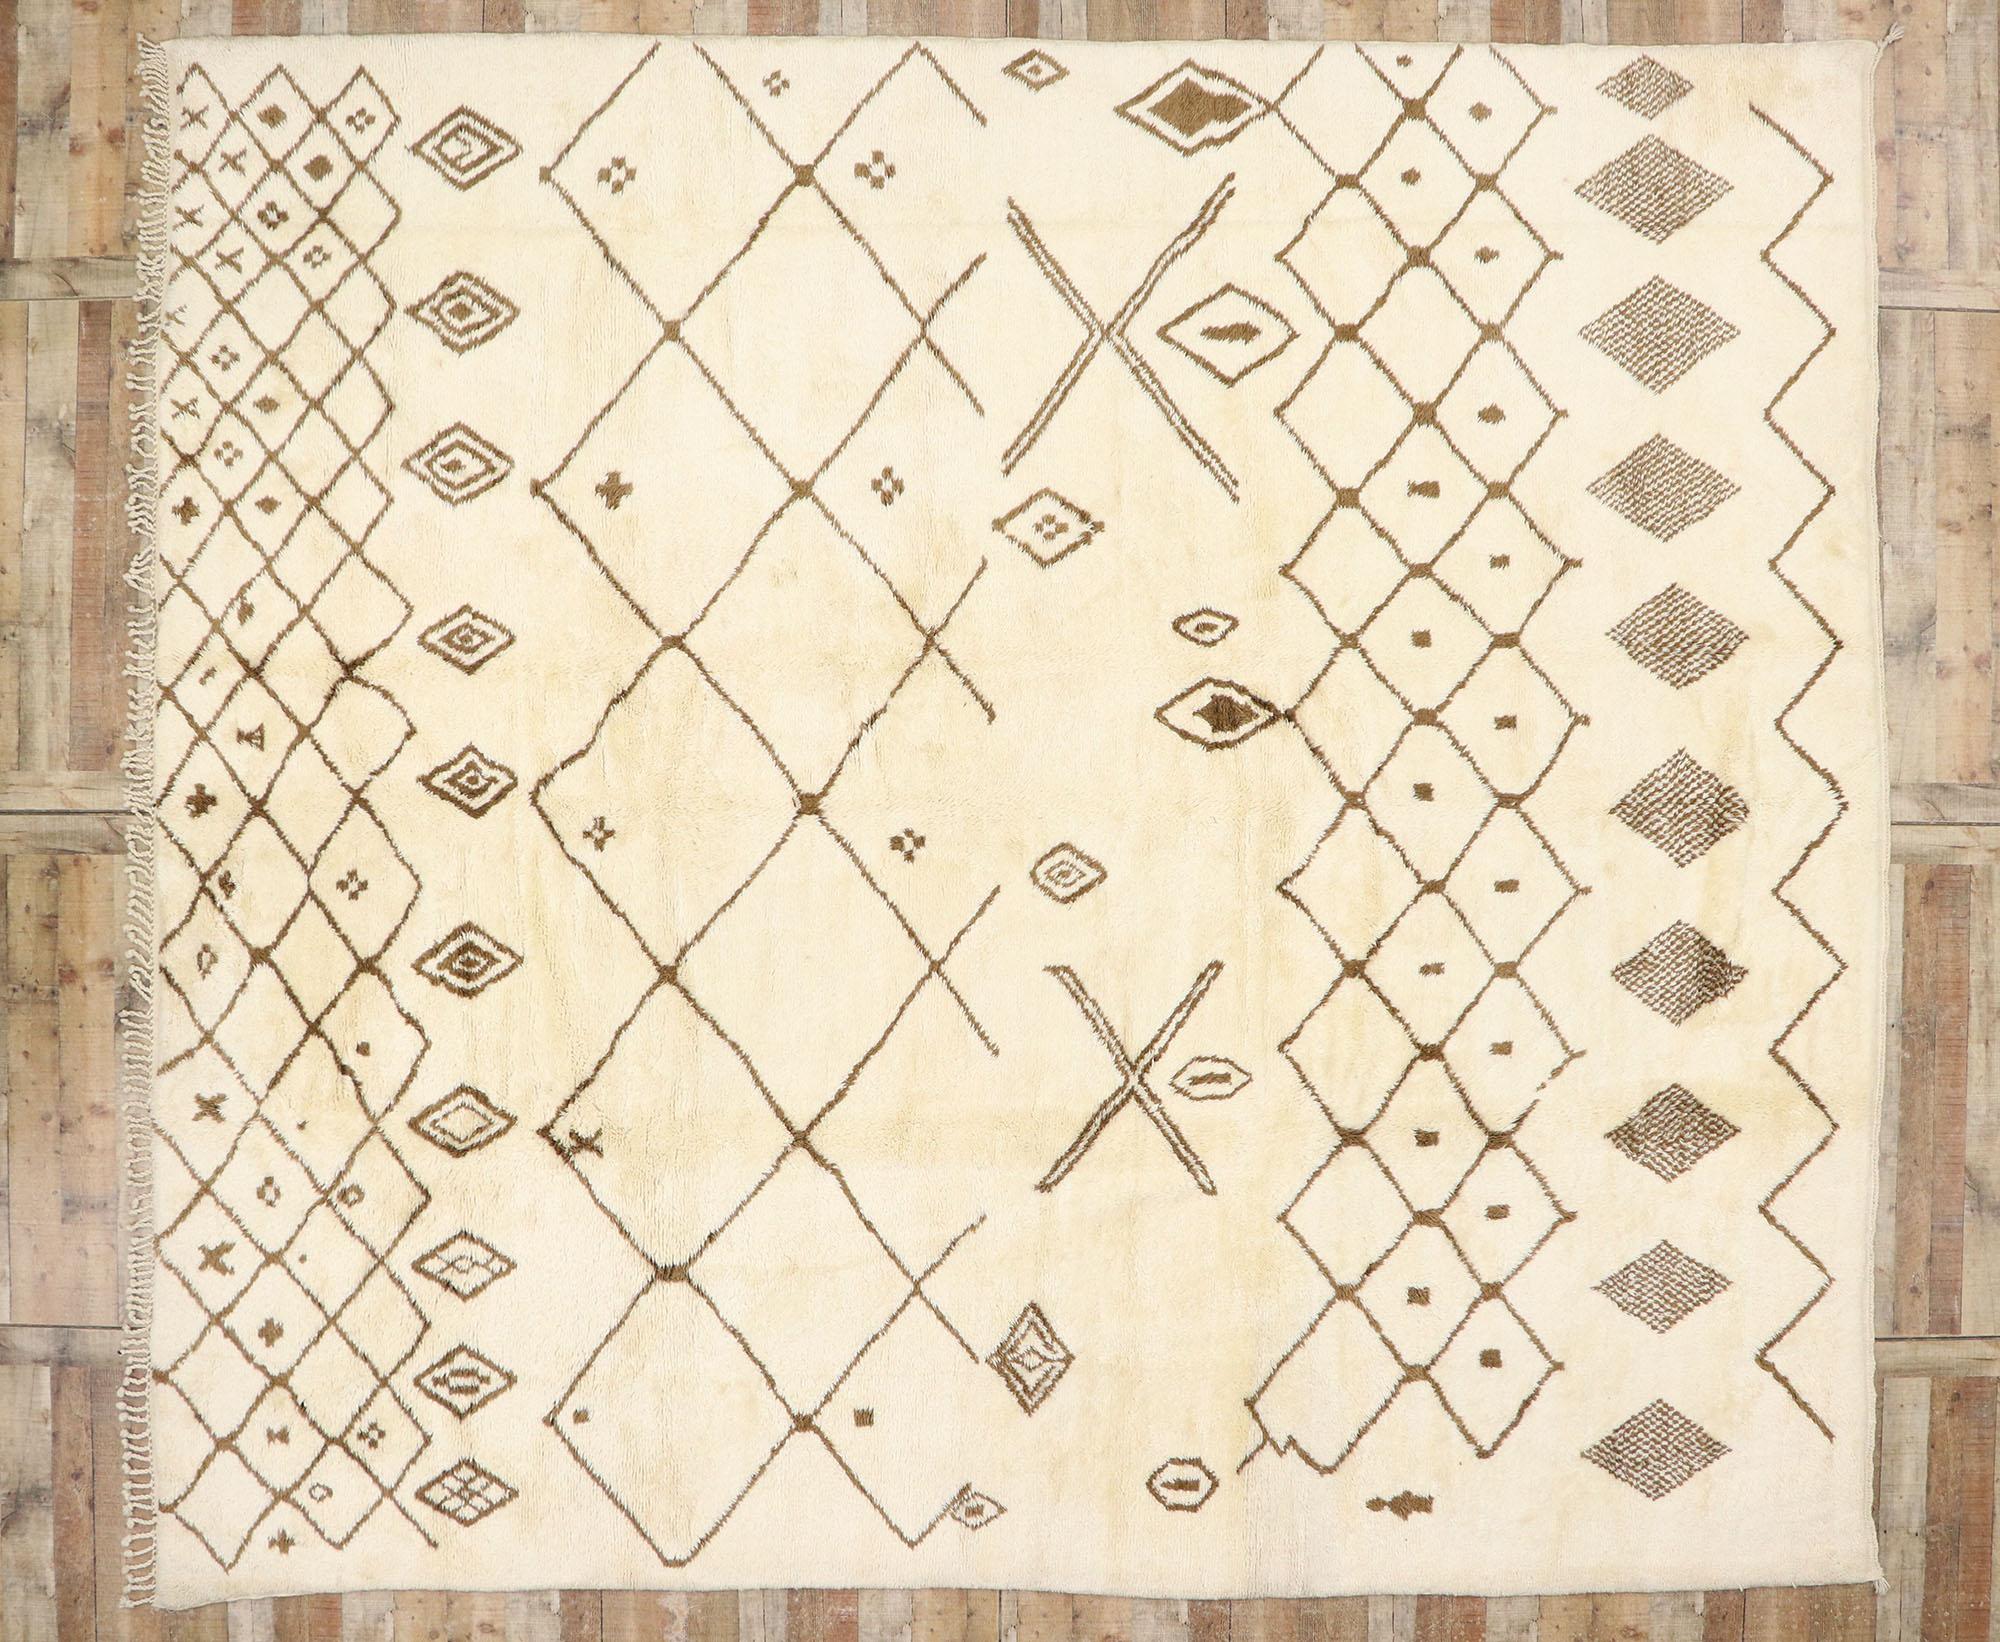 Laine Grand tapis berbère marocain authentique, le confort hygge rencontre le charme nomade en vente